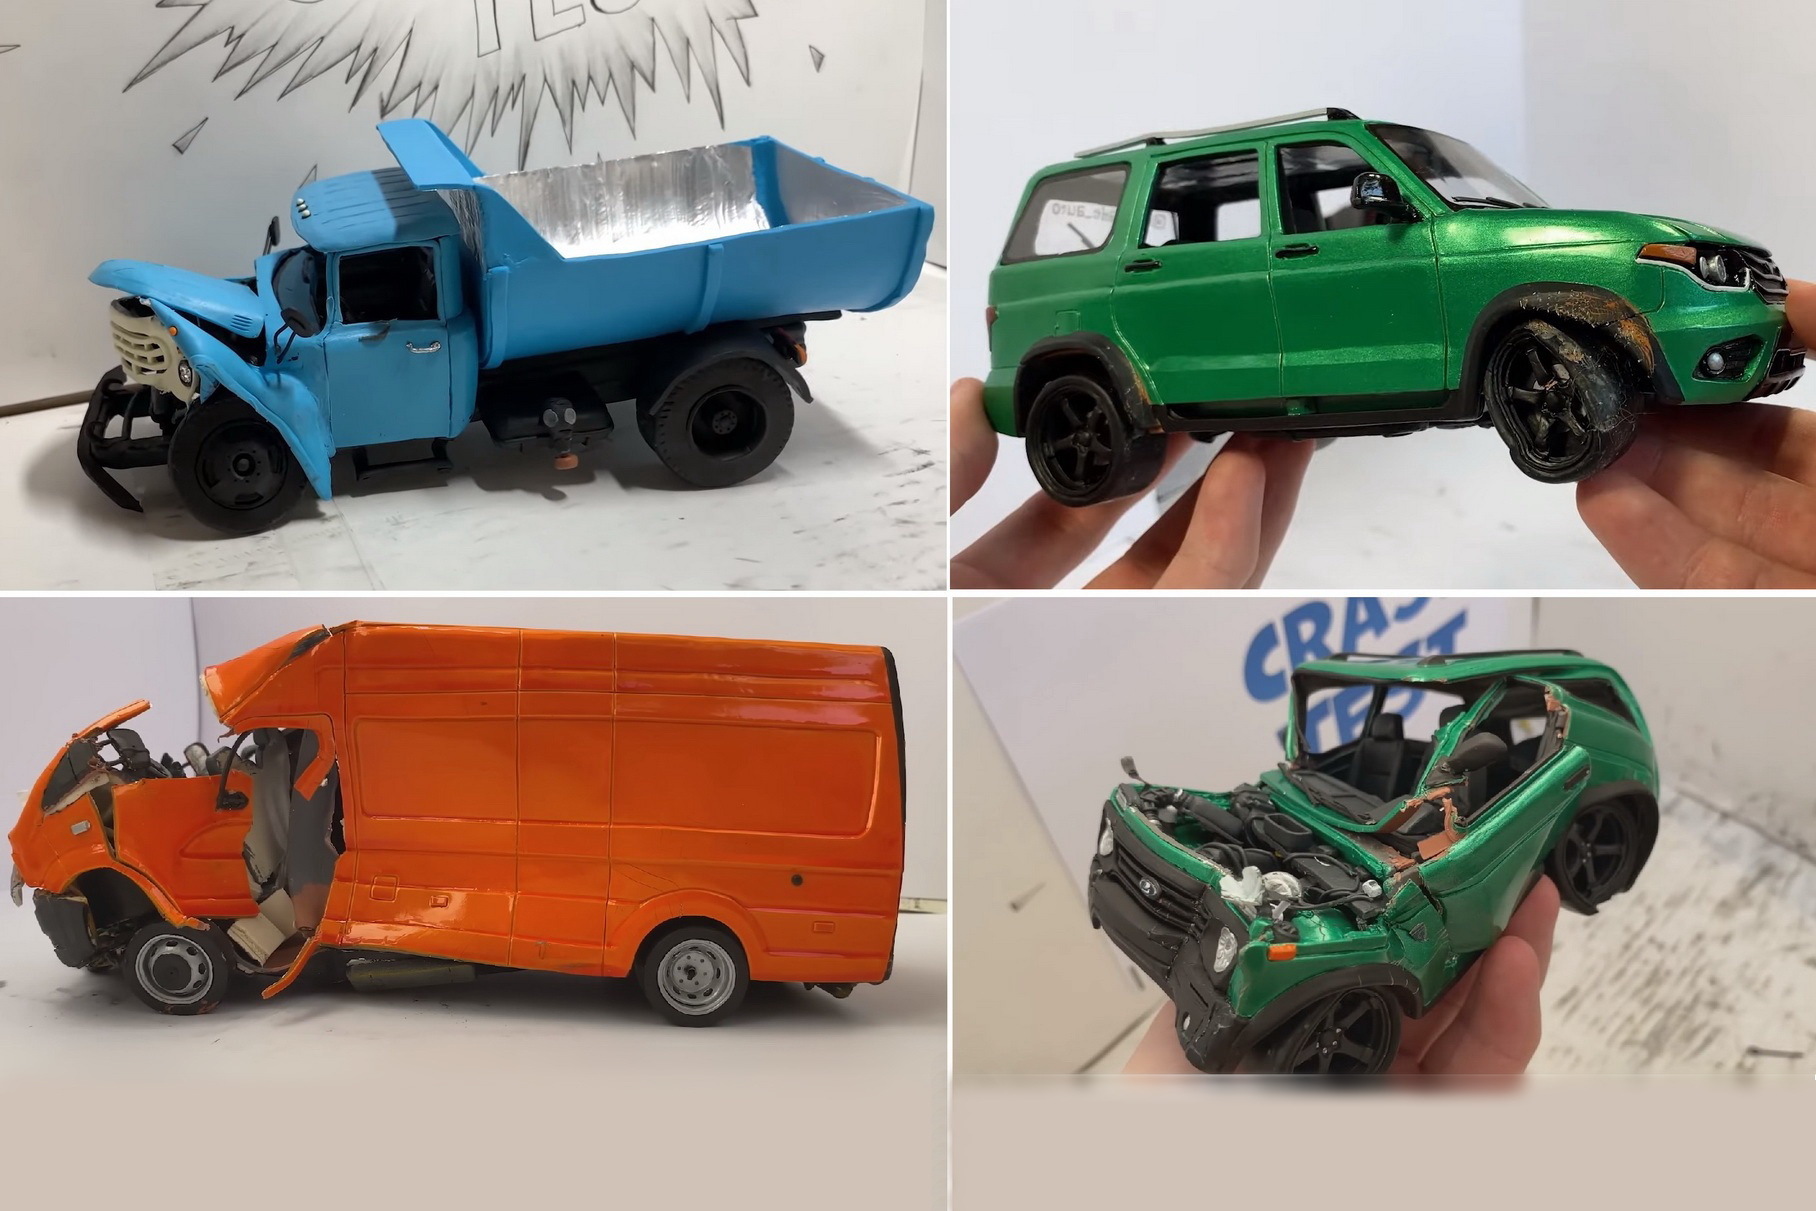 Умелец показал видео краш-тестов пластилиновых моделей УАЗ, ГАЗ и ЗИЛ